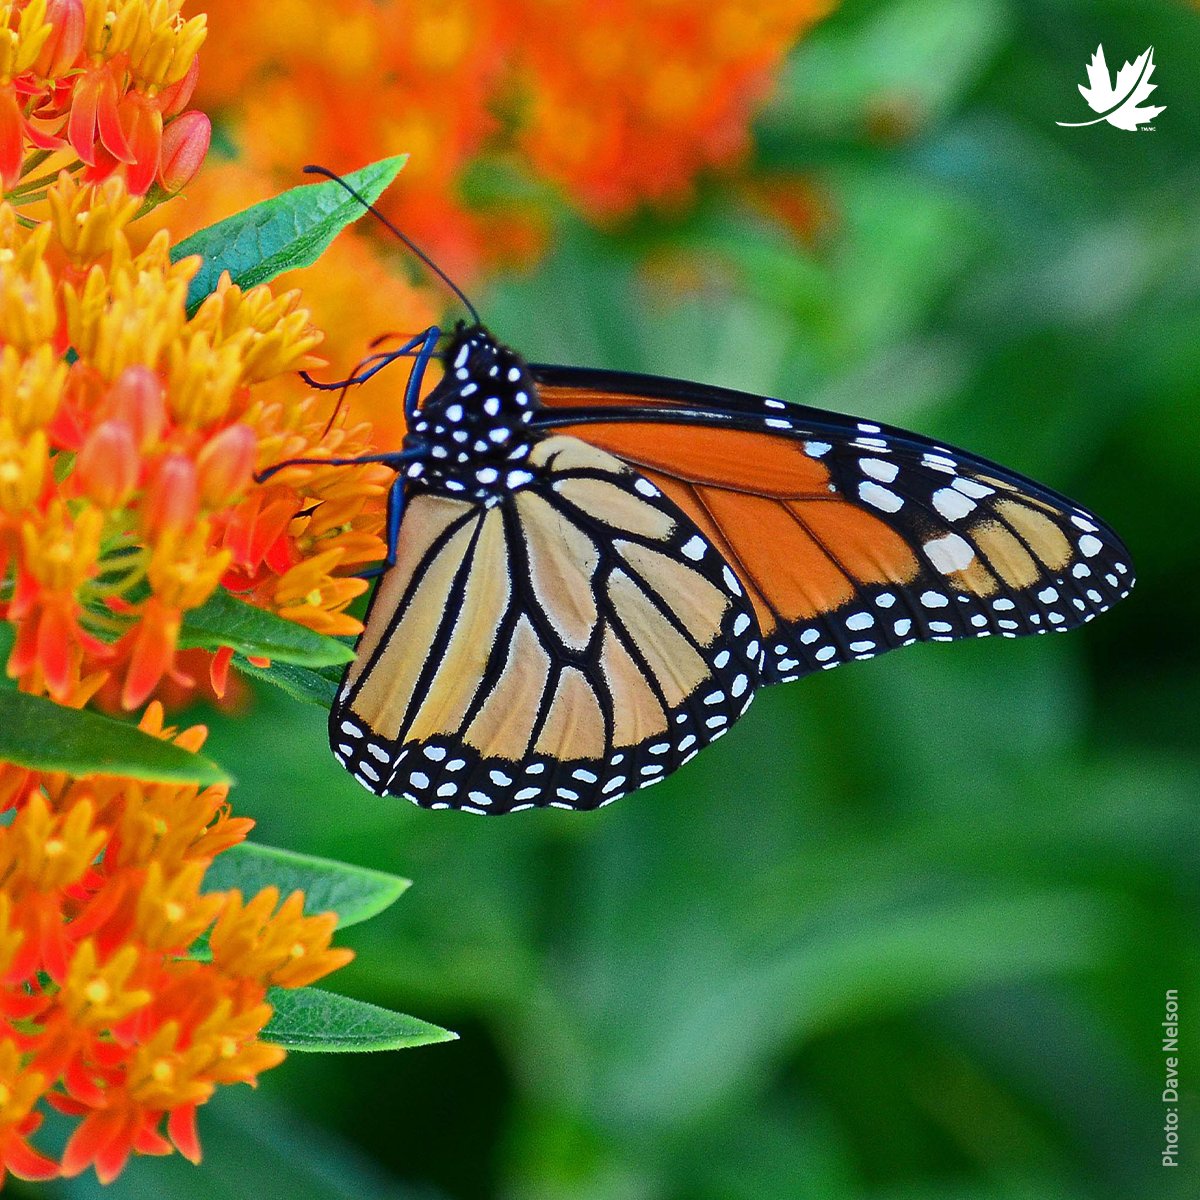 Monarch butterflies are making their way back to Canada for the summer months! Have you spotted any monarchs yet? 🦋 --- Les monarques sont en route vers le Canada pour y passer l’été! En avez-vous déjà repéré jusqu’à présent? 🦋